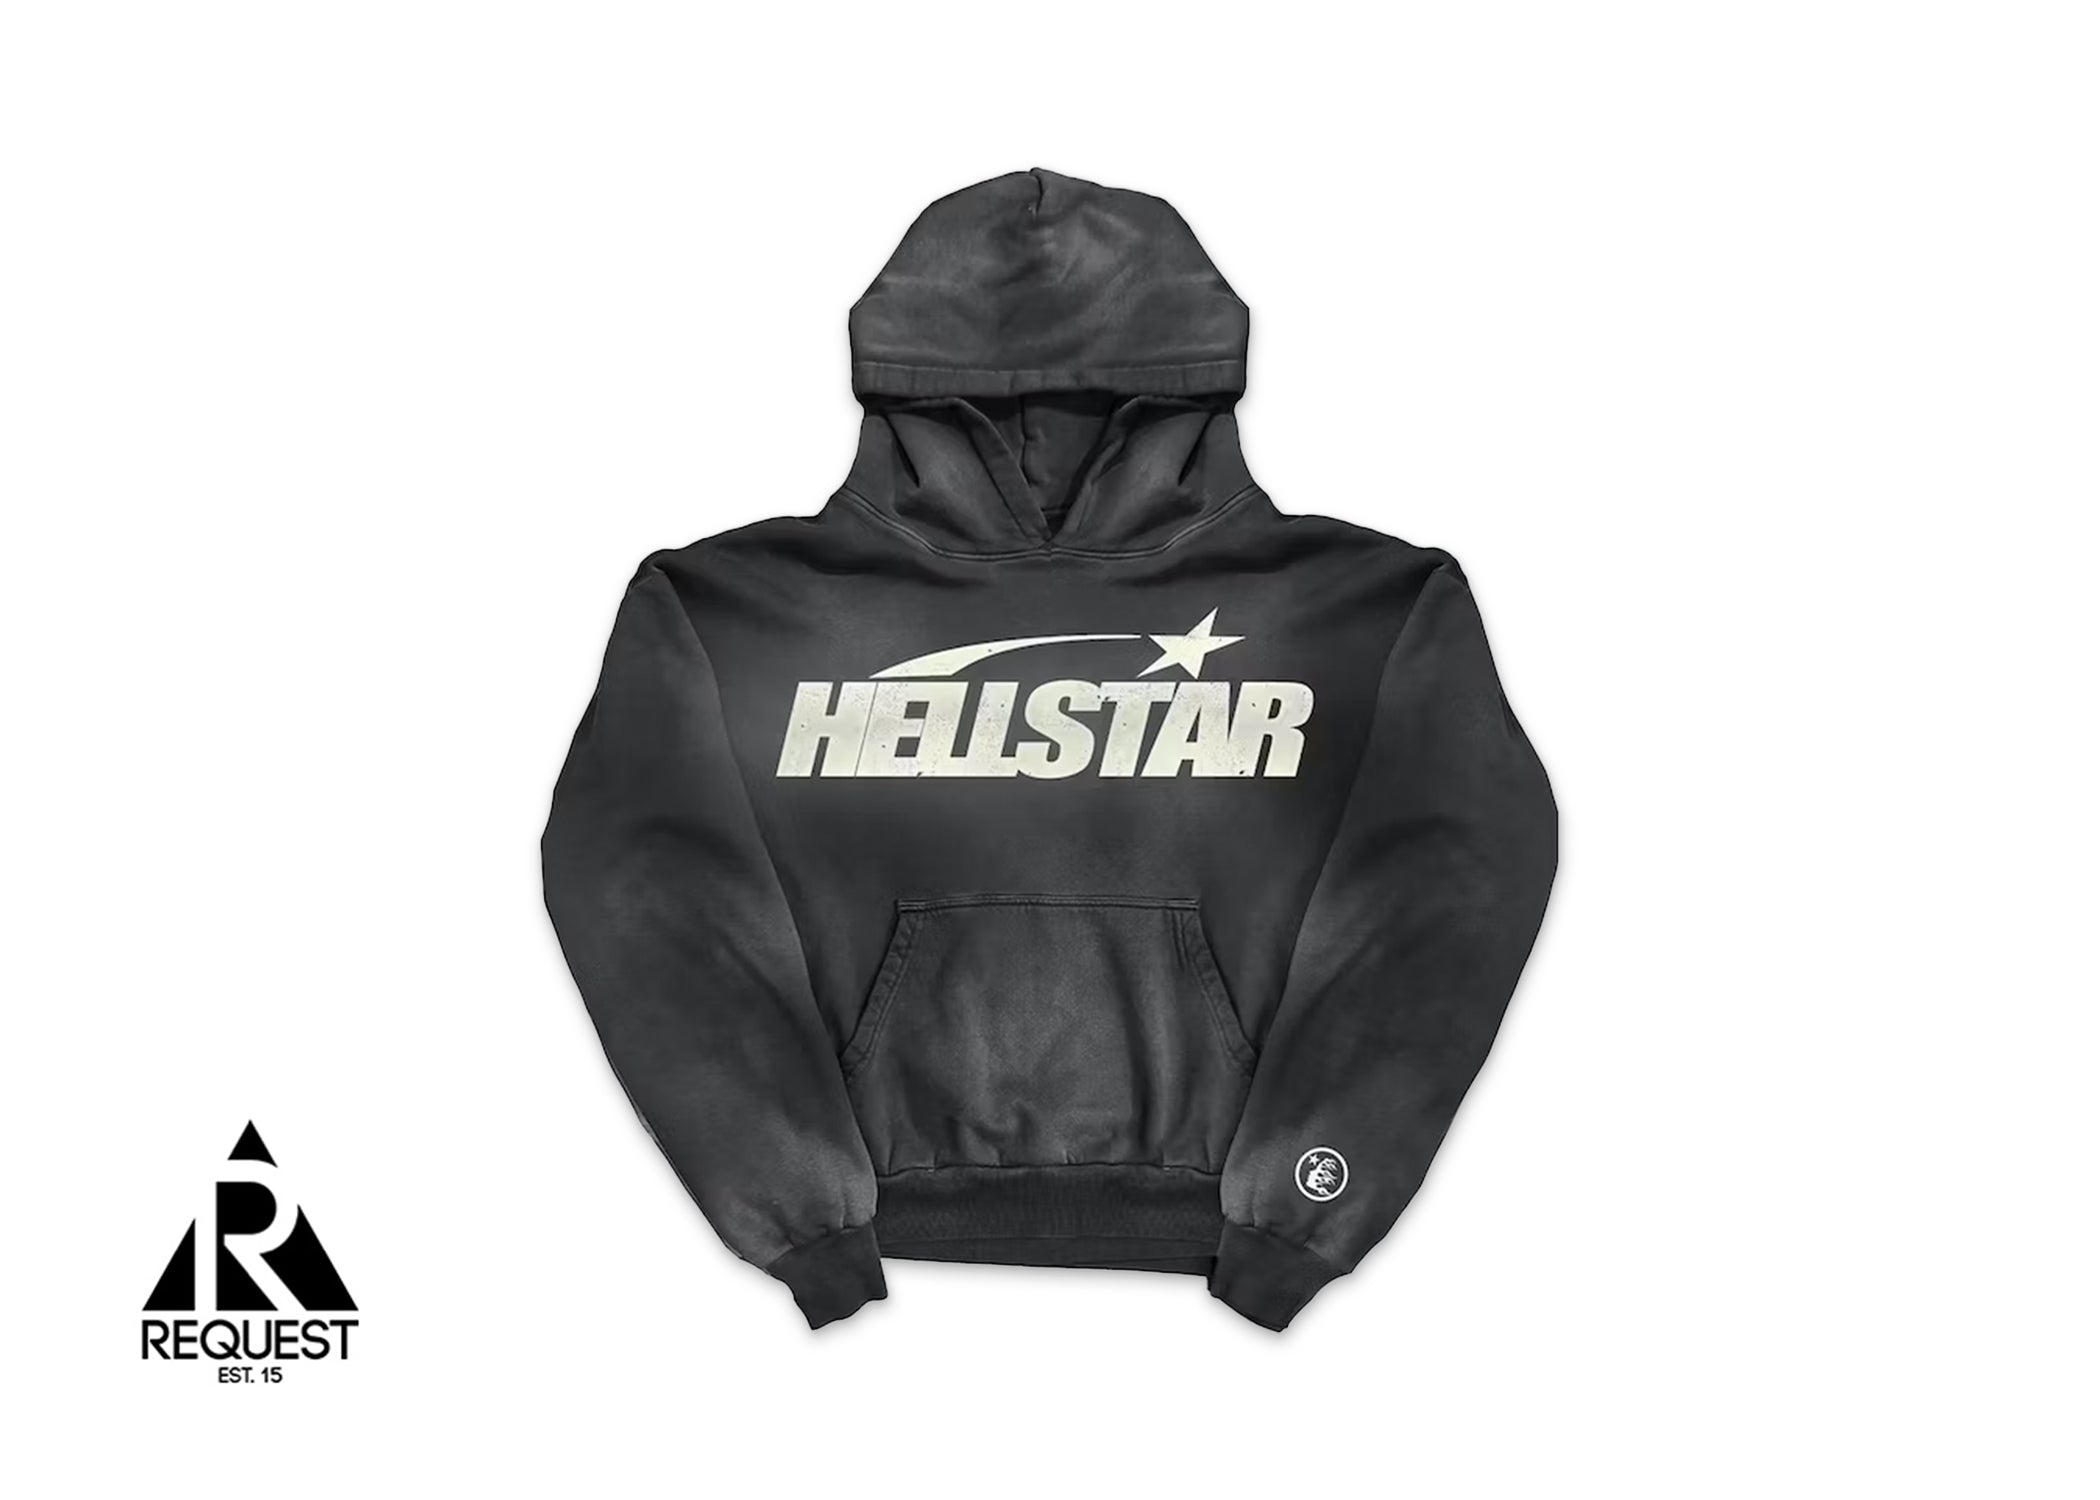 HellStar Uniform Hoodie "Black"